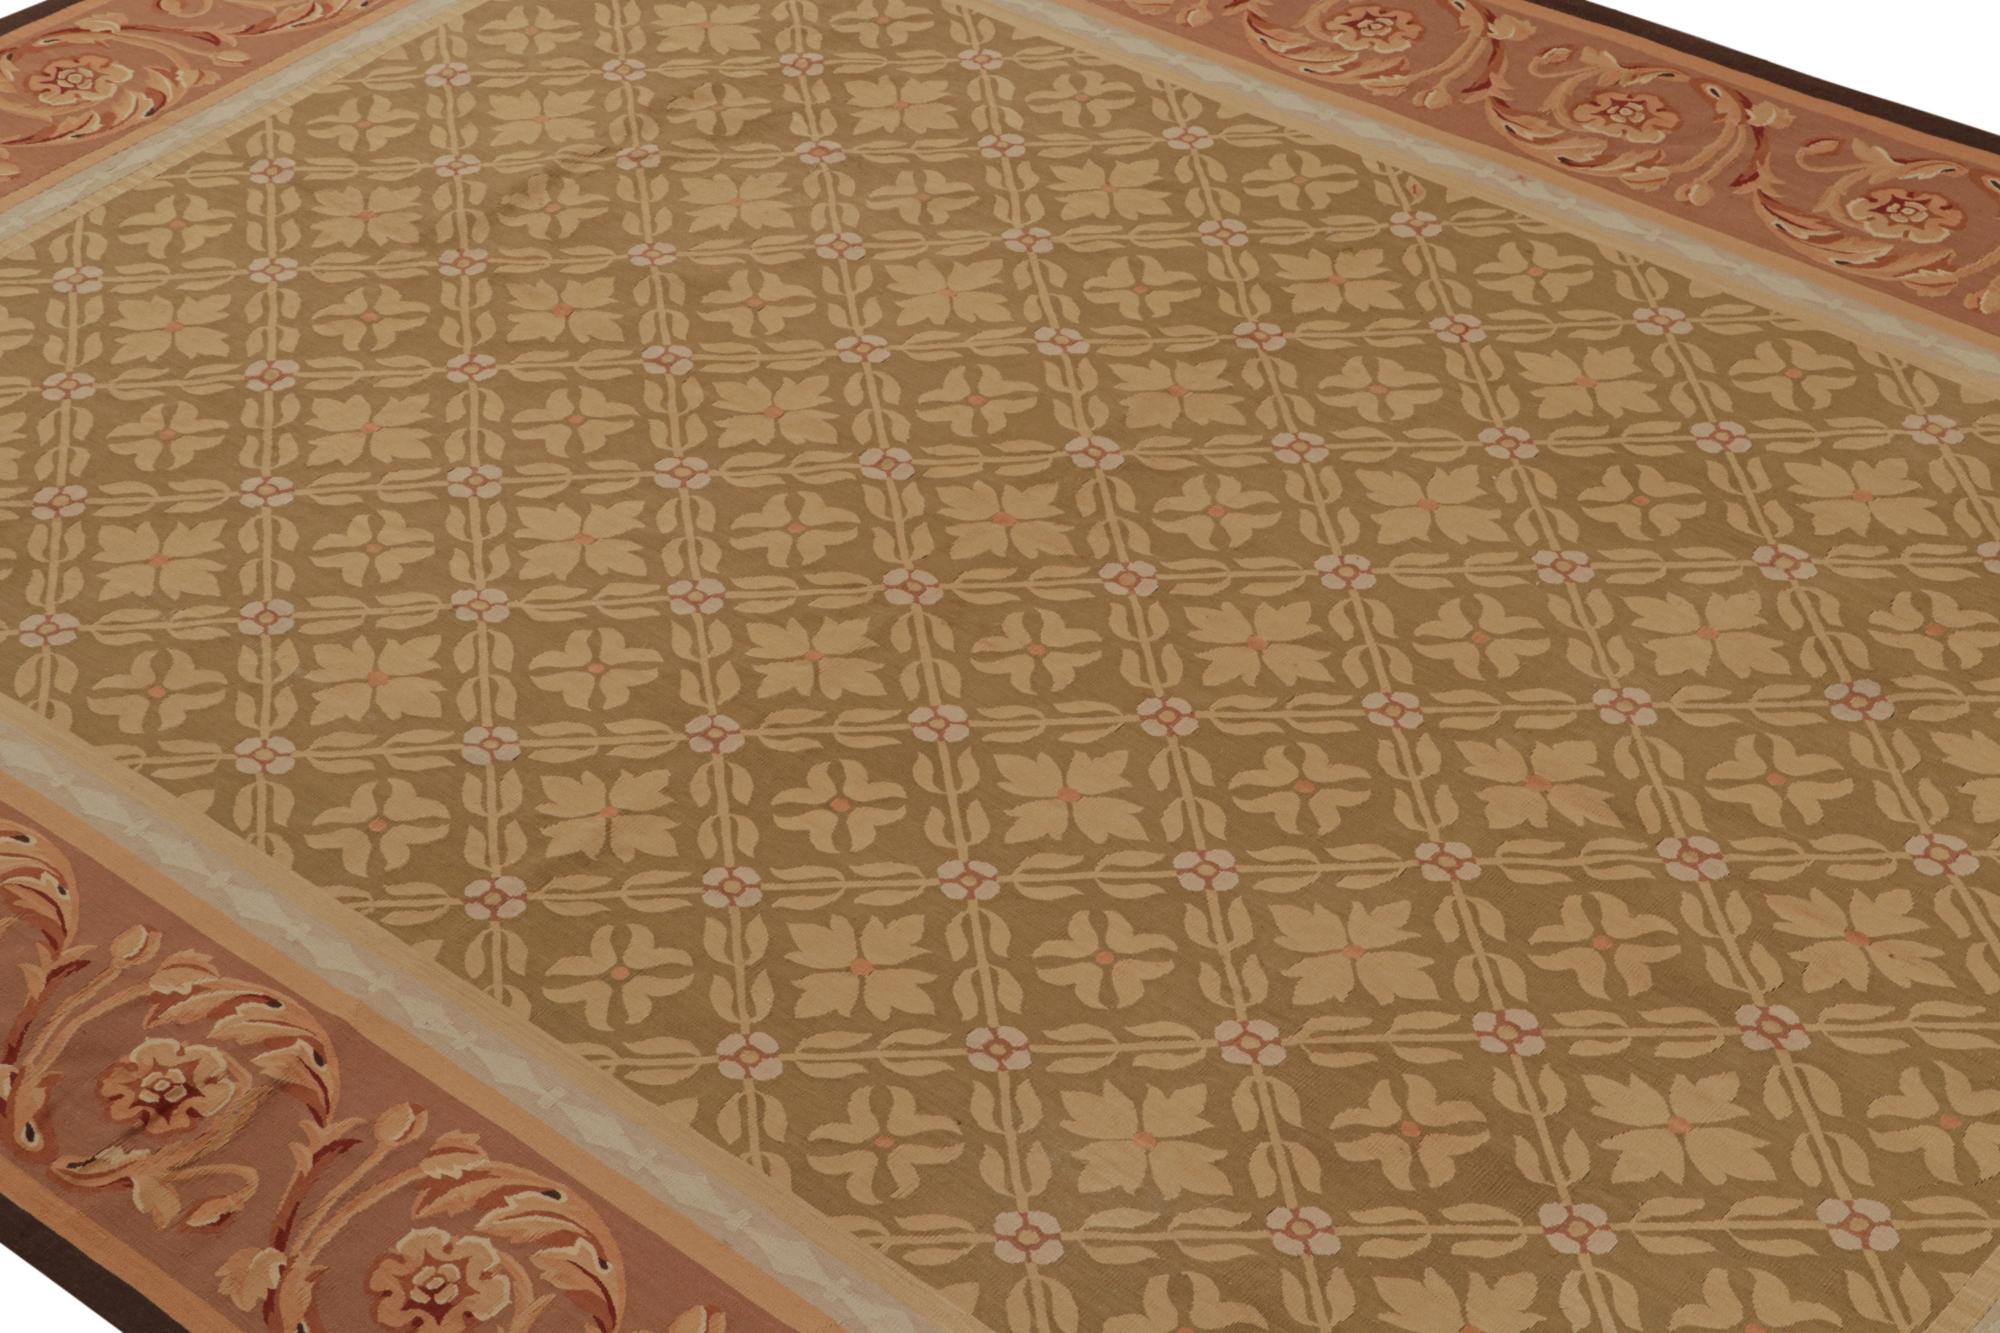 Dieses 9x12 große Flachgewebe aus der europäischen Teppichkollektion von Rug & Kilim ist eine zeitgemäße Interpretation der Aubusson-Teppiche und -Wandteppiche aus dem 18. Dieses handgewebte Stück aus feiner Wolle stammt aus den frühesten